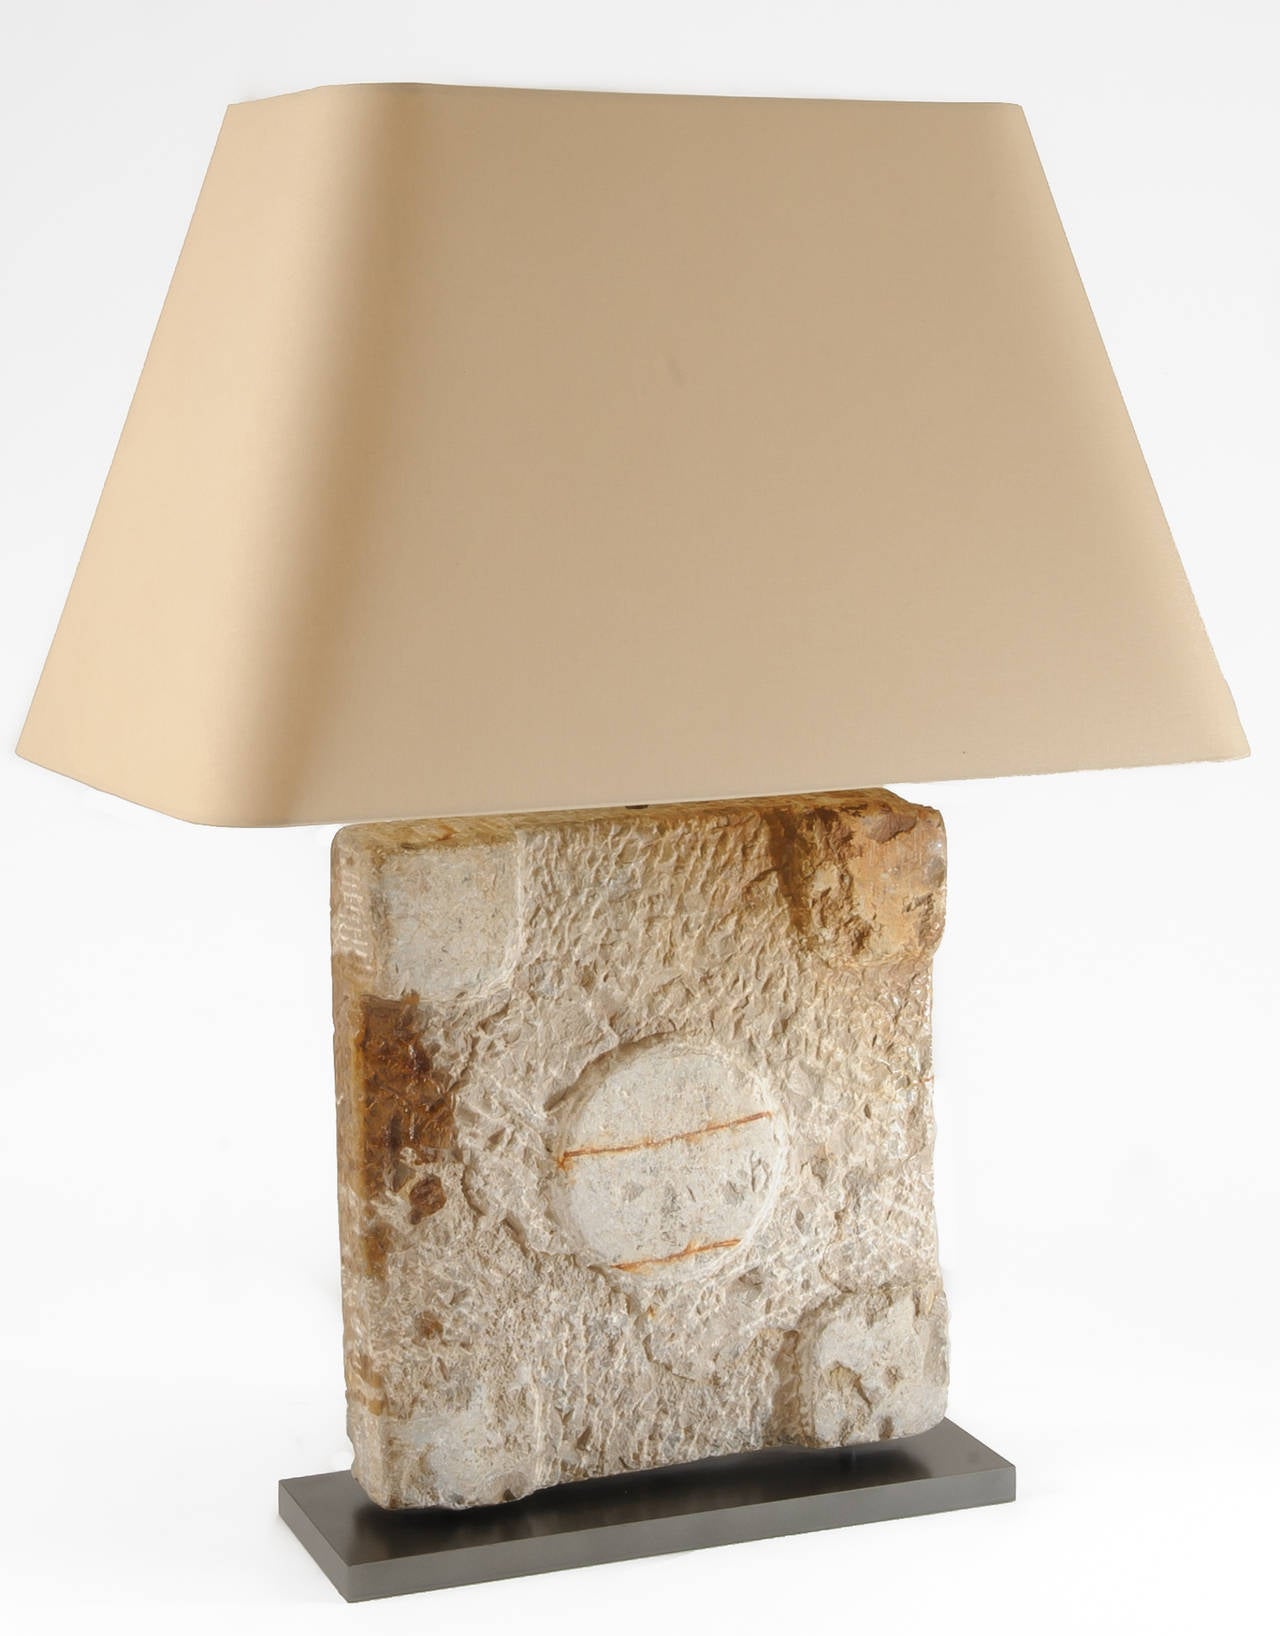 Élément architectural : Une base en pierre pour colonne romaine est incorporée dans une base de lampe et montée sur une plaque de métal. La lampe a été électrifiée pour une utilisation aux Etats-Unis. Il est équipé d'un interrupteur en ligne de